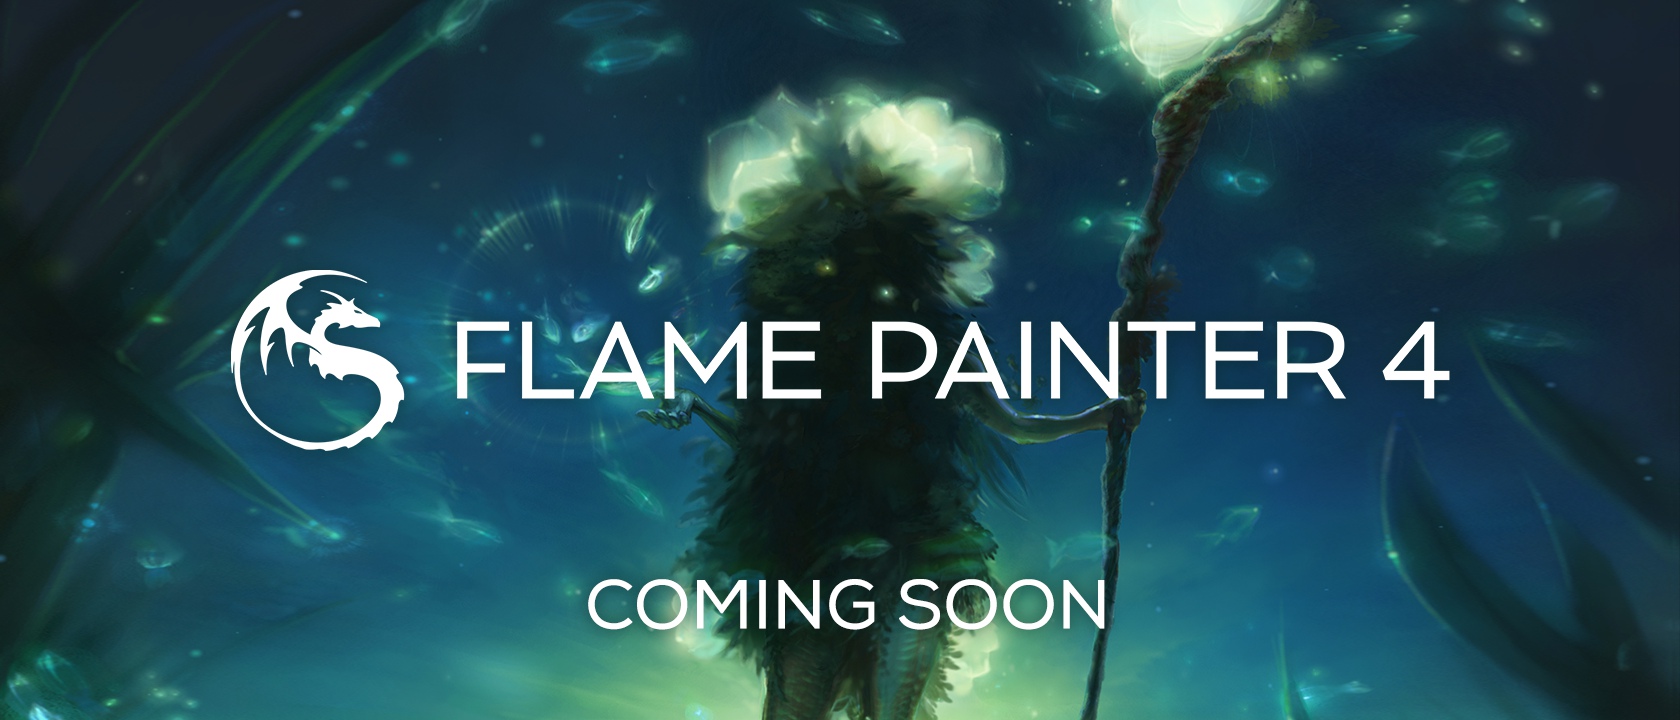 flame painter 4 full